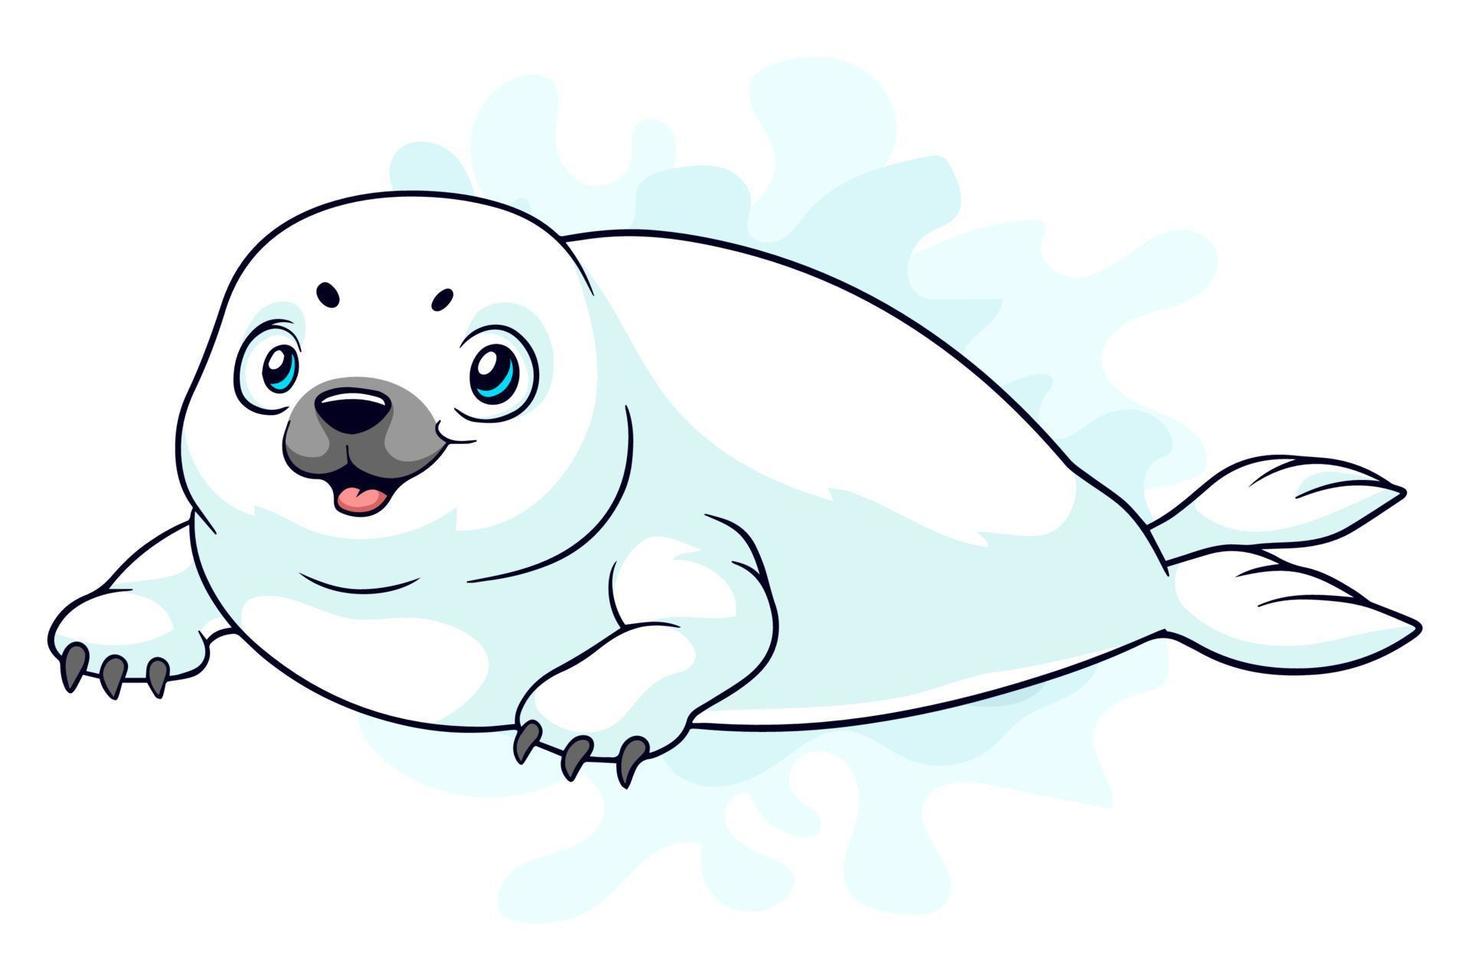 cachorro de foca arpa de dibujos animados sobre fondo blanco vector